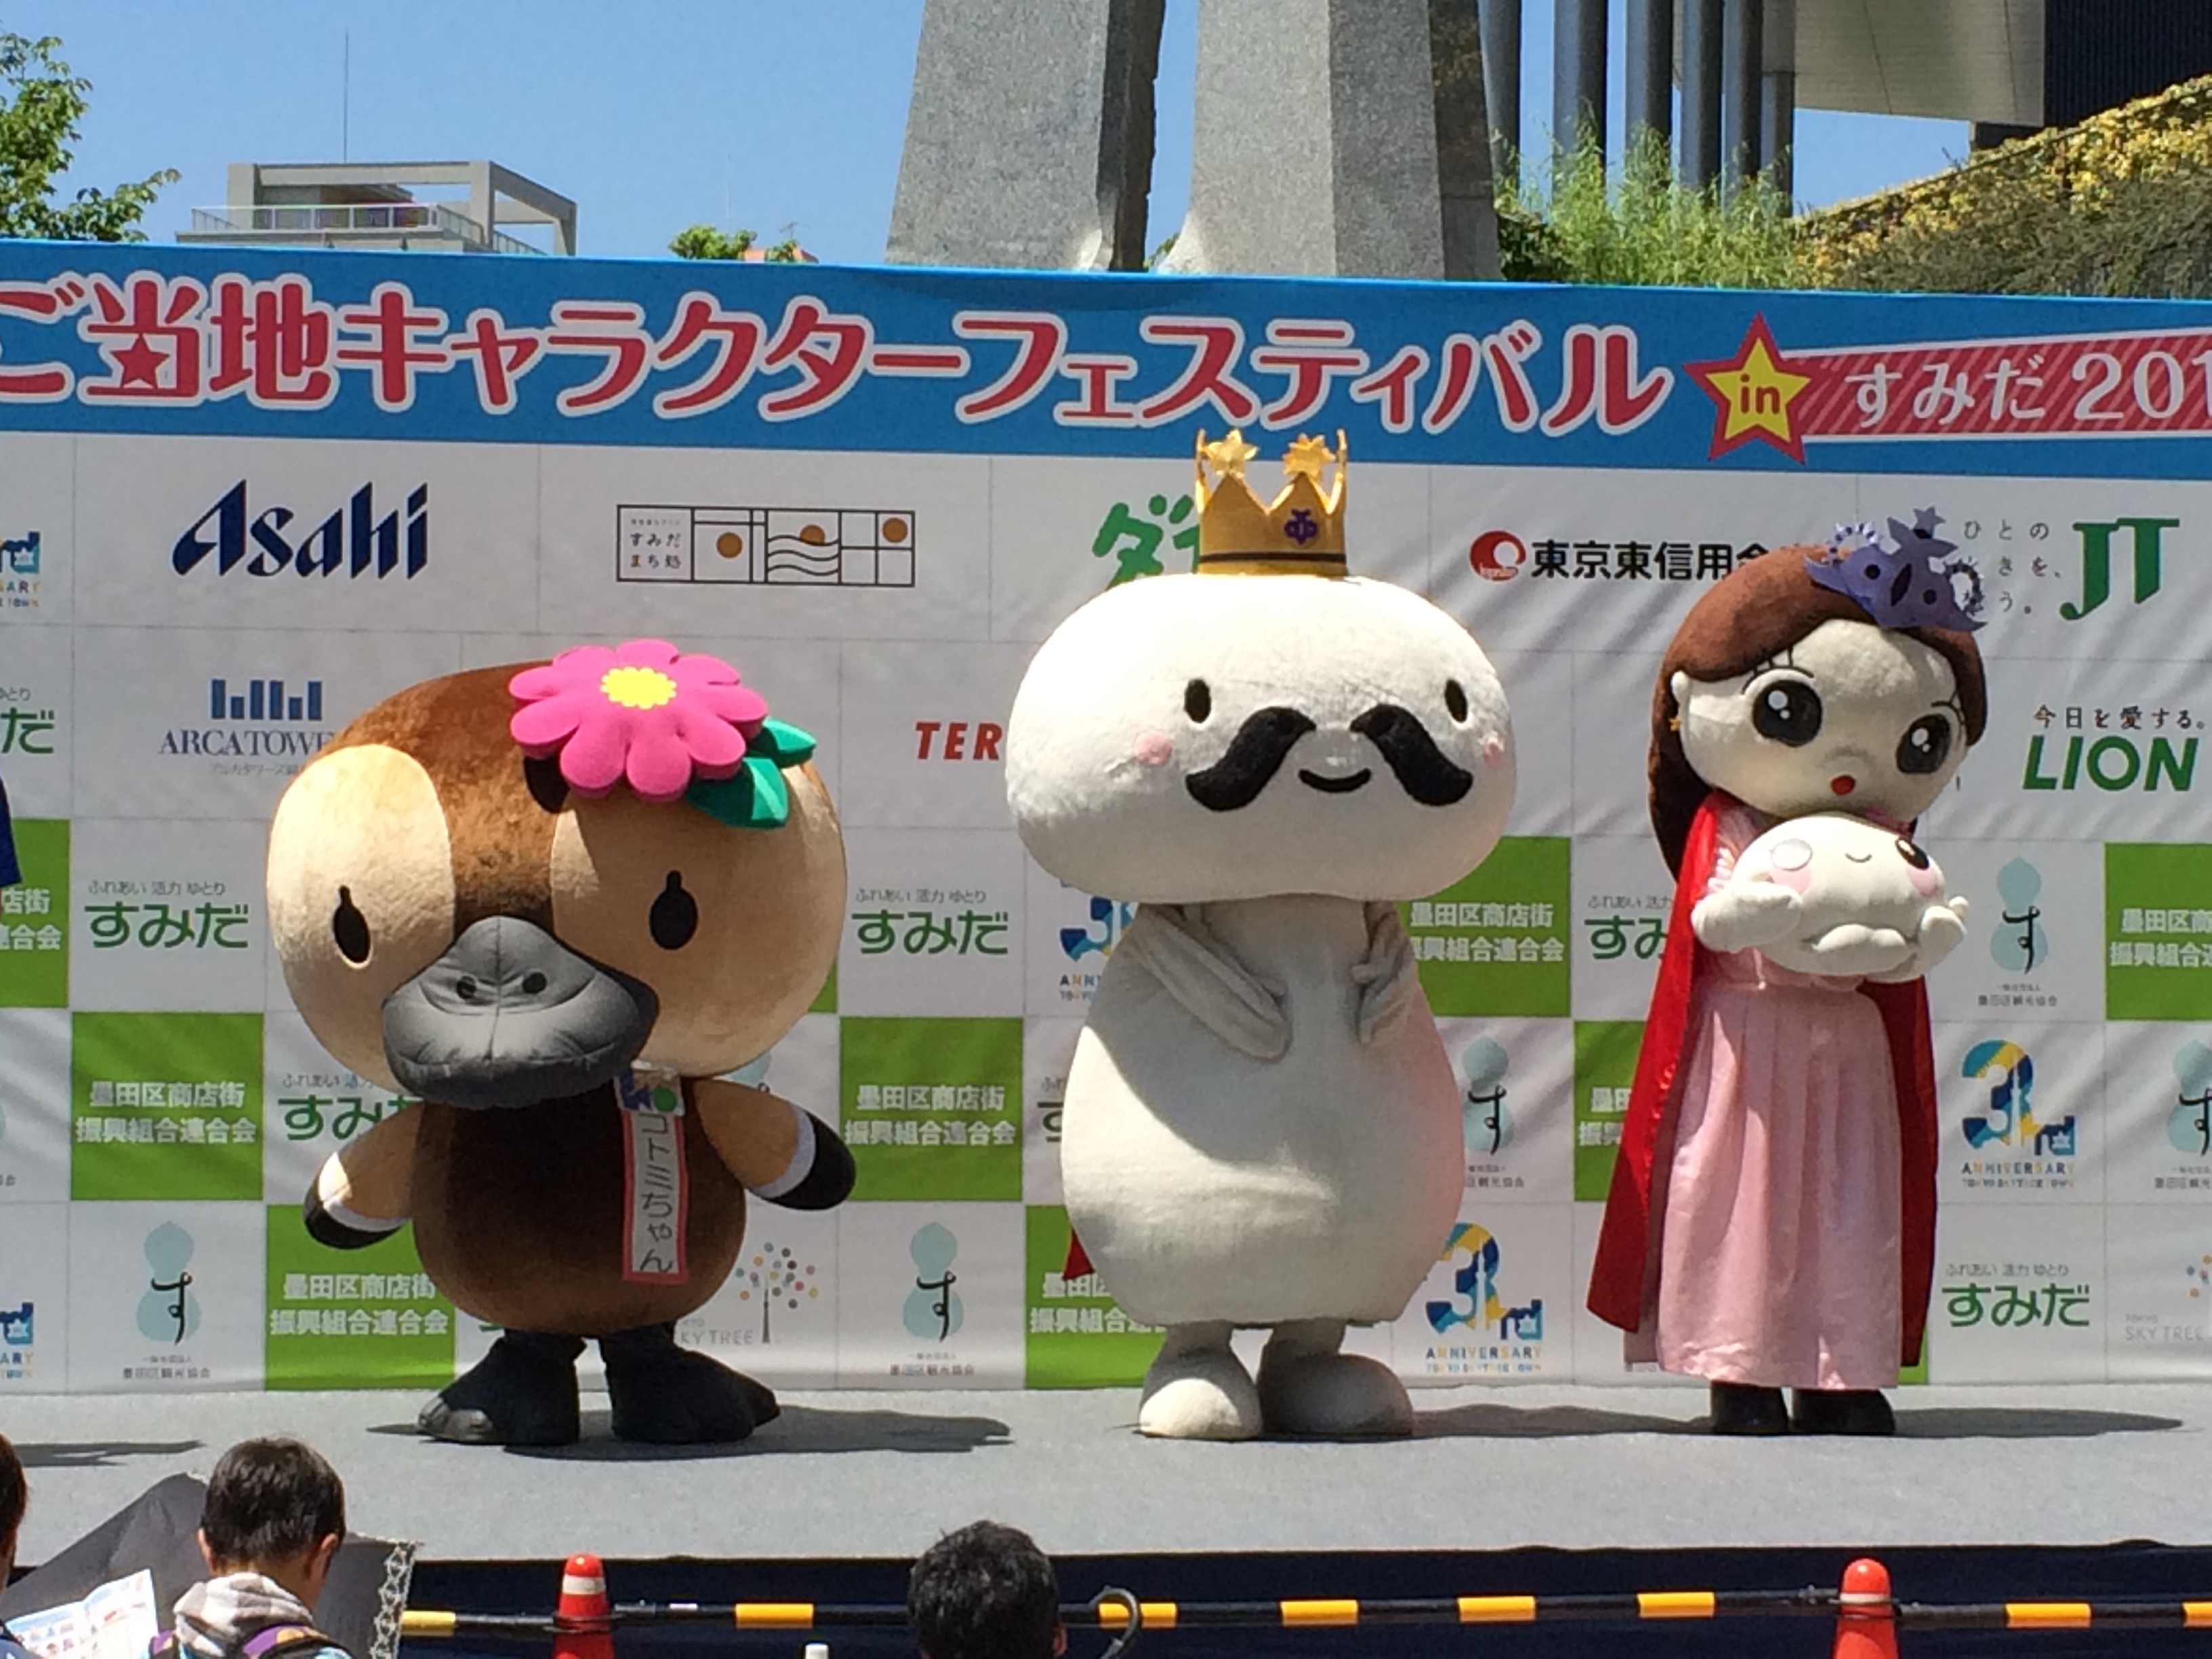 【終了】『ご当地キャラクターフェスティバル in すみだ 2016』に、江東区観光キャラクター“コトミちゃん”が参加します。